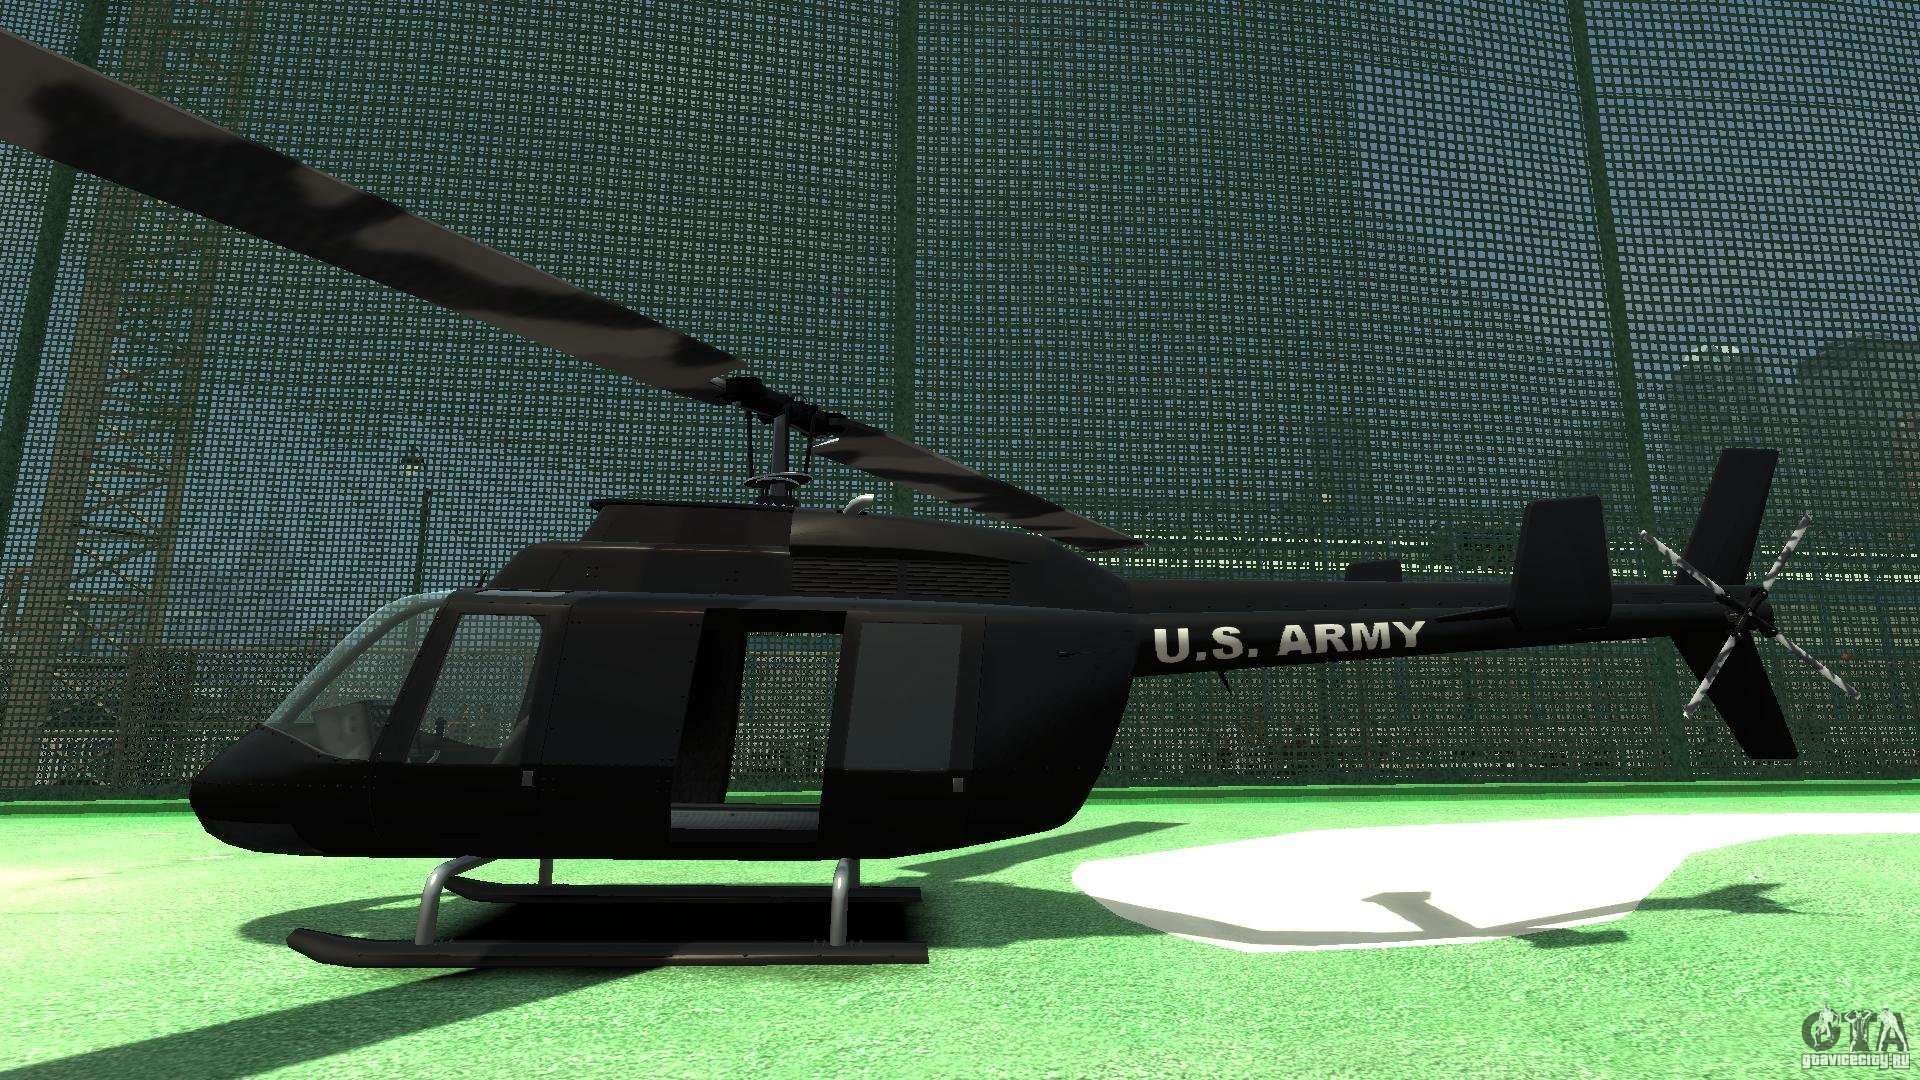 Black U.S. ARMY Helicopter v0.2 para GTA 41920 x 1080